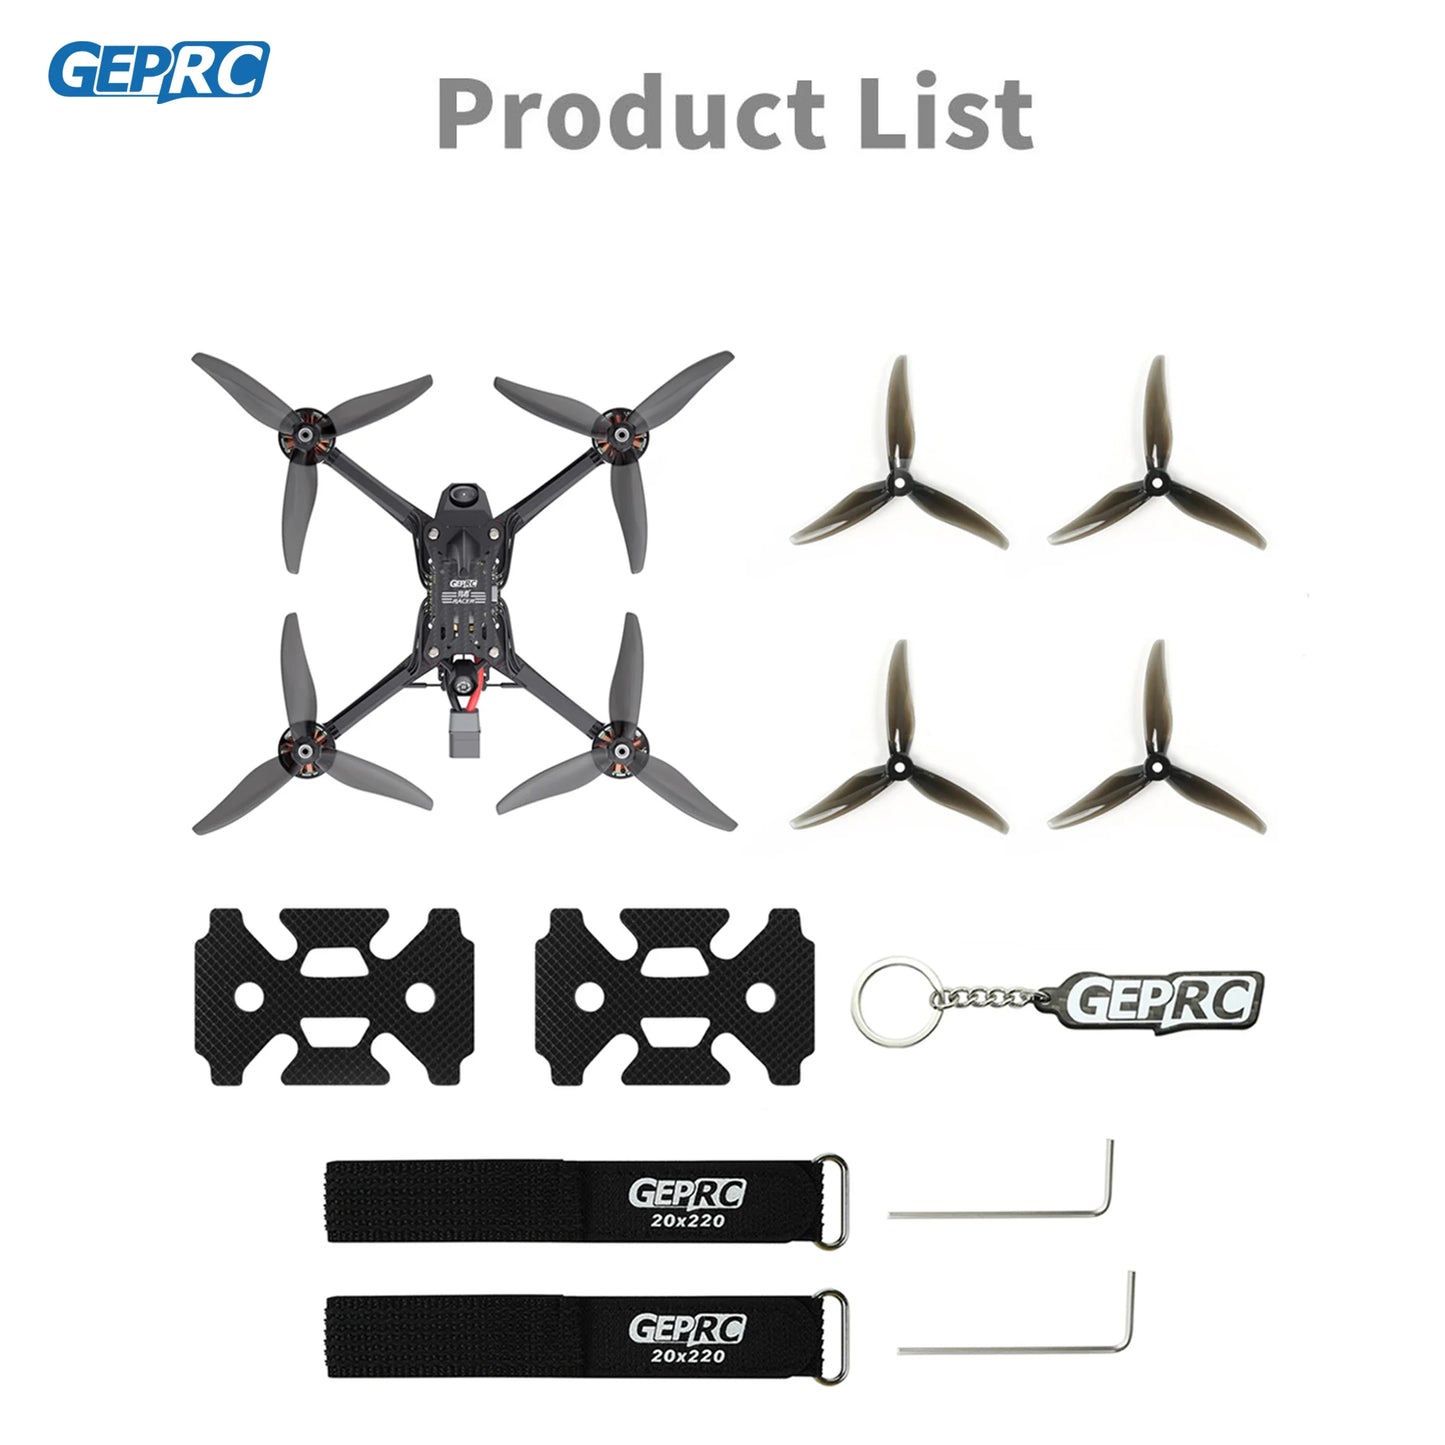 GEPRC Racer FPV Racing Drone, GEPRC Product List U GEPARC GEPRAC 20x220 GEPREC